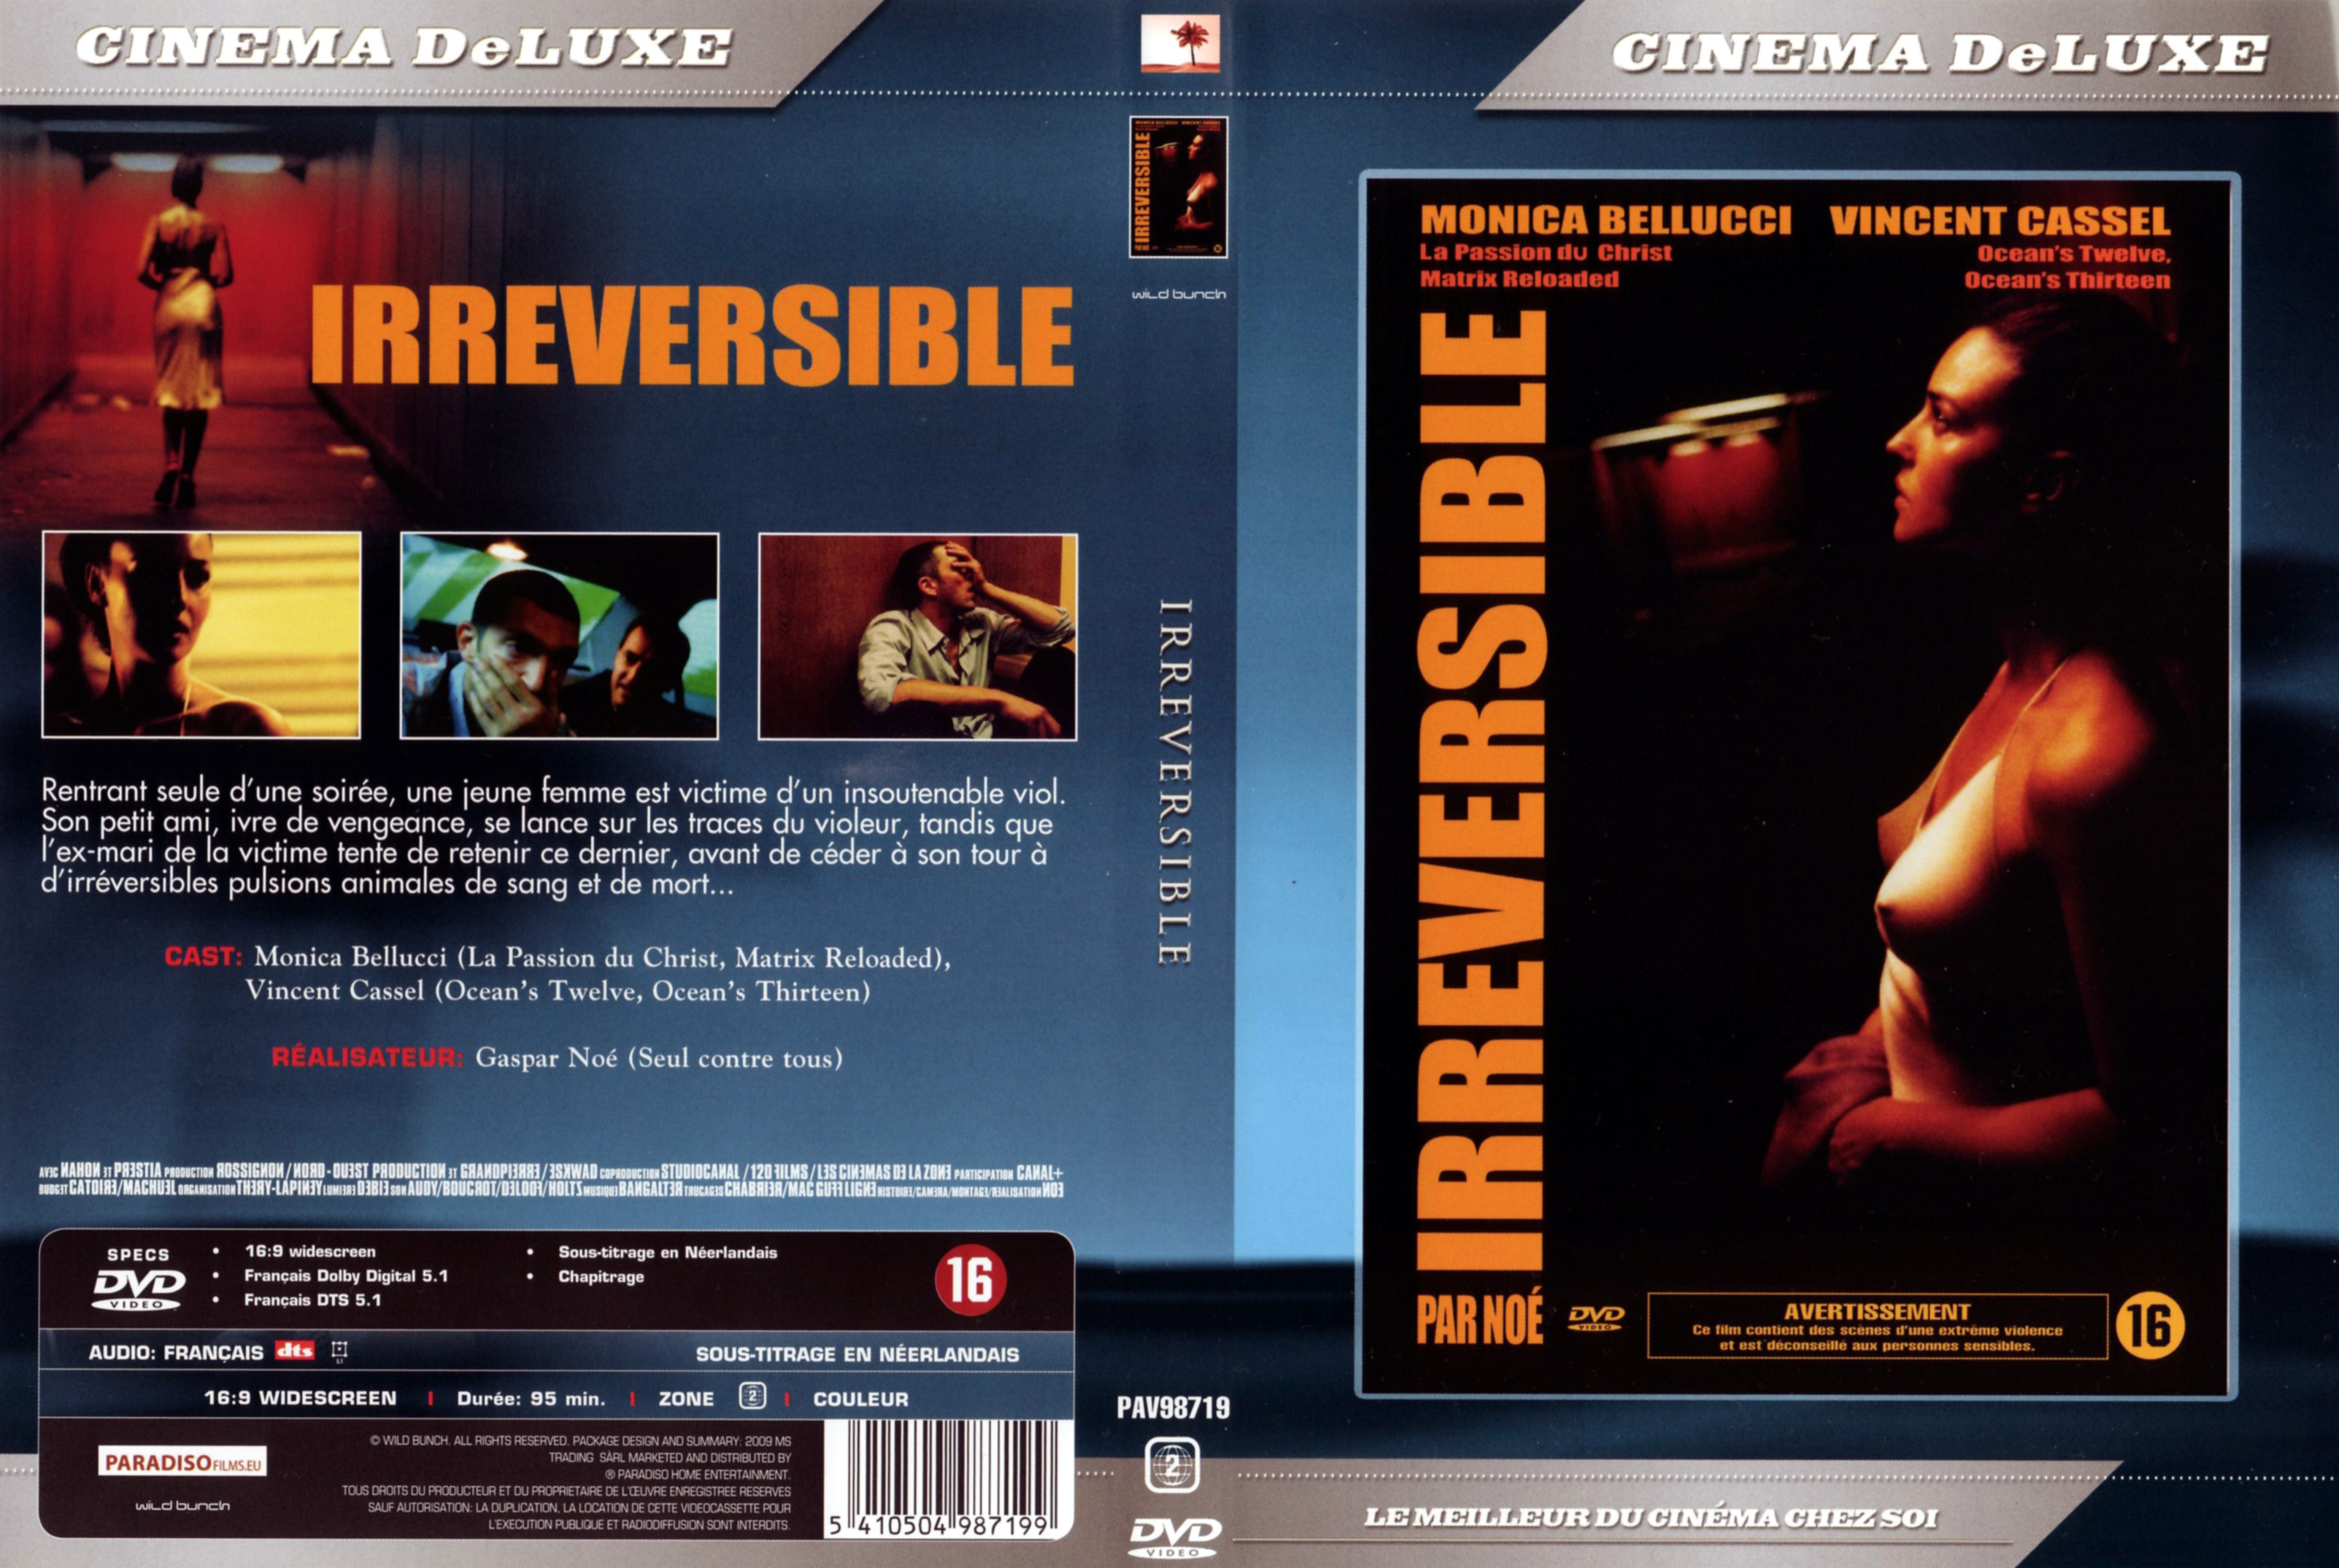 Jaquette DVD Irreversible v3